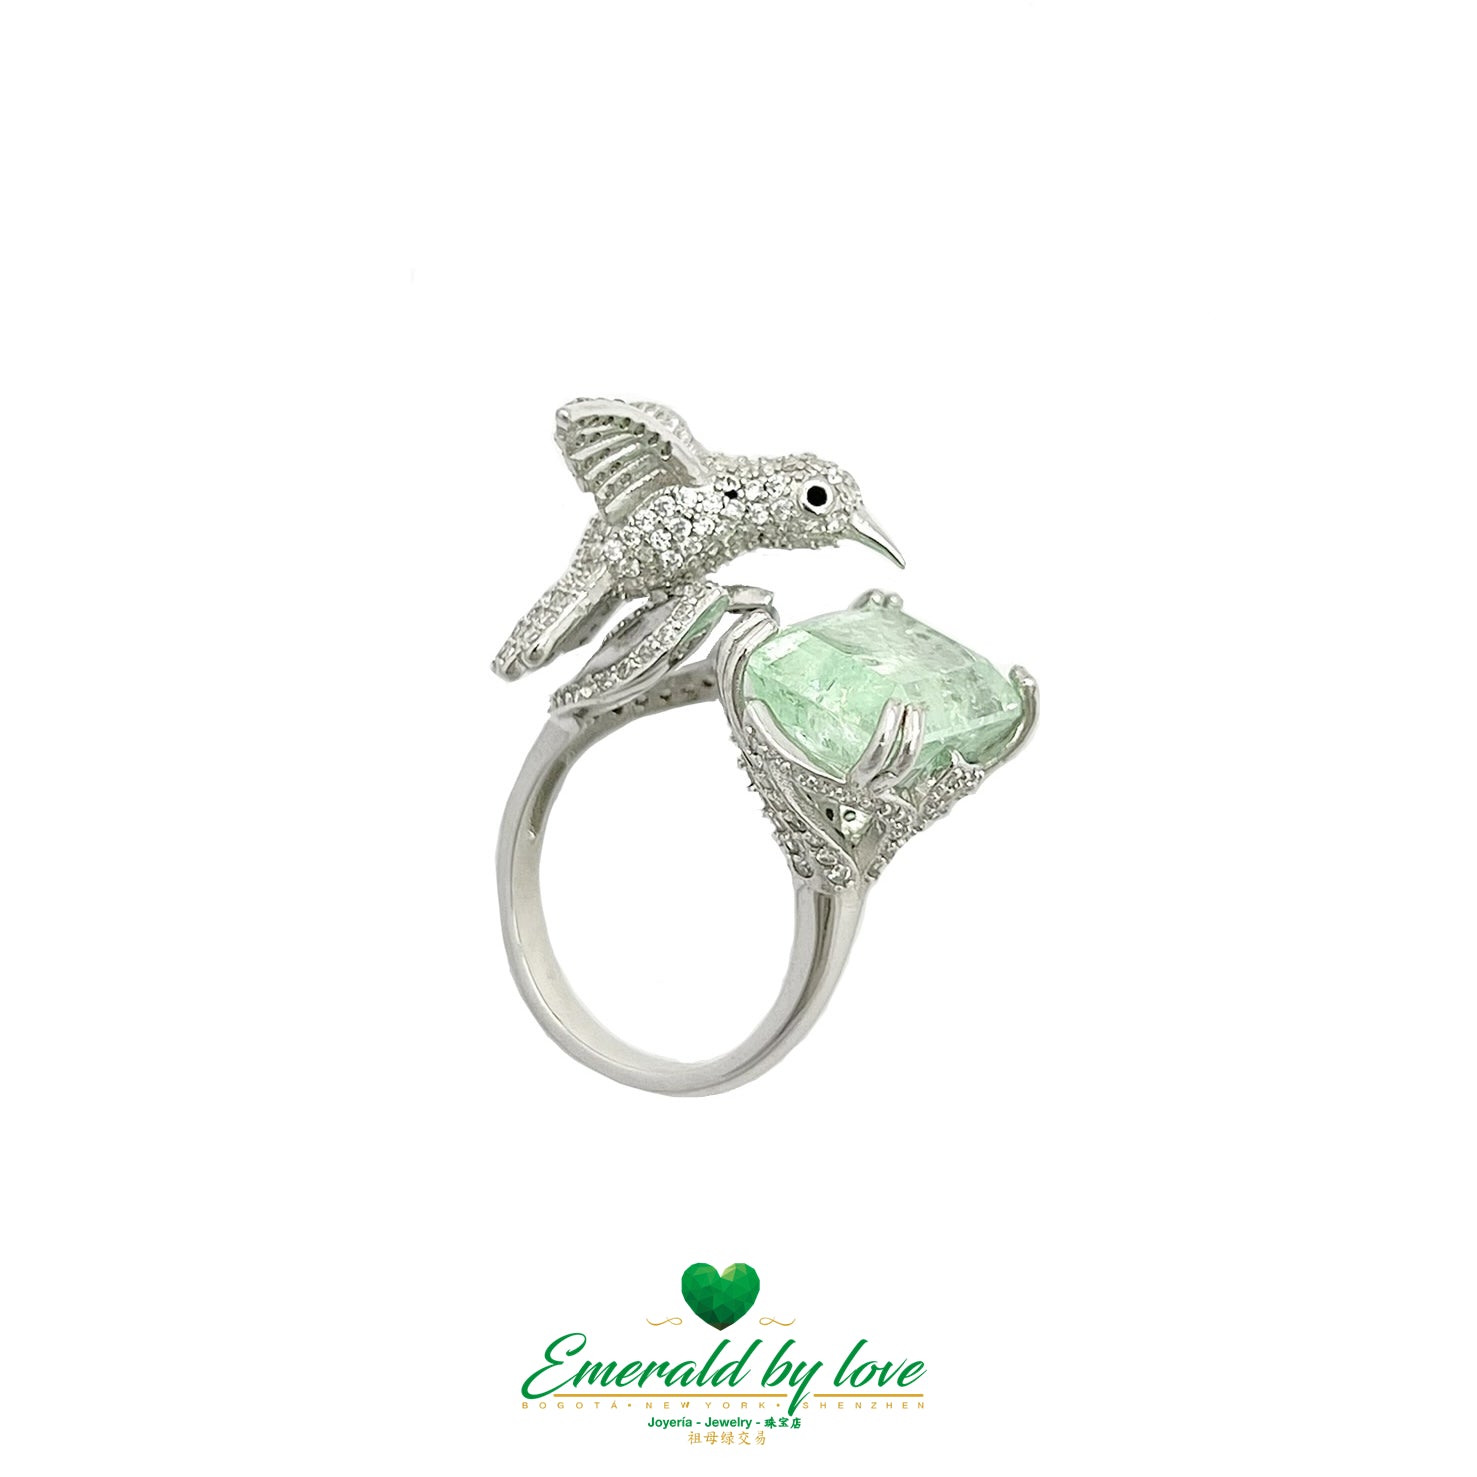 Espectacular anillo rectangular de cristal esmeralda con detalle de colibrí